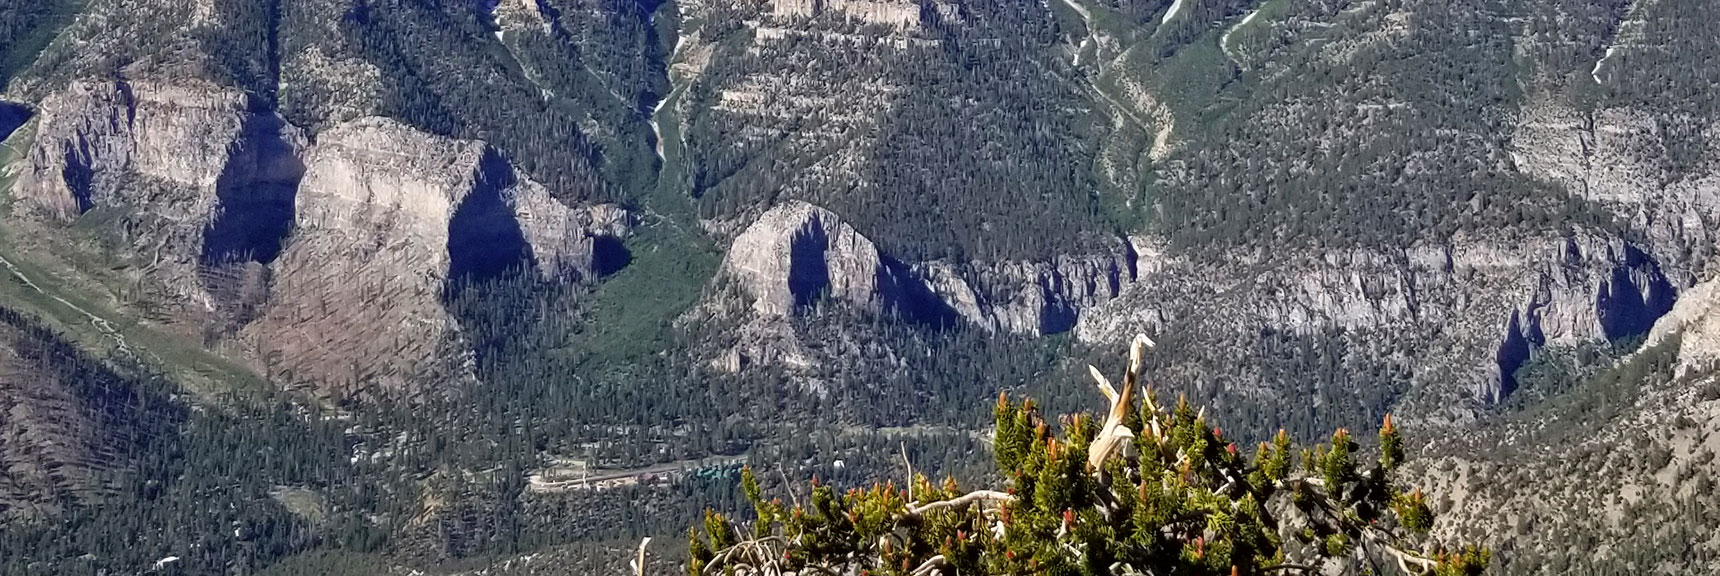 Cathedral Rock Viewed from Fletcher Peak in Mt. Charleston Wilderness, Nevada